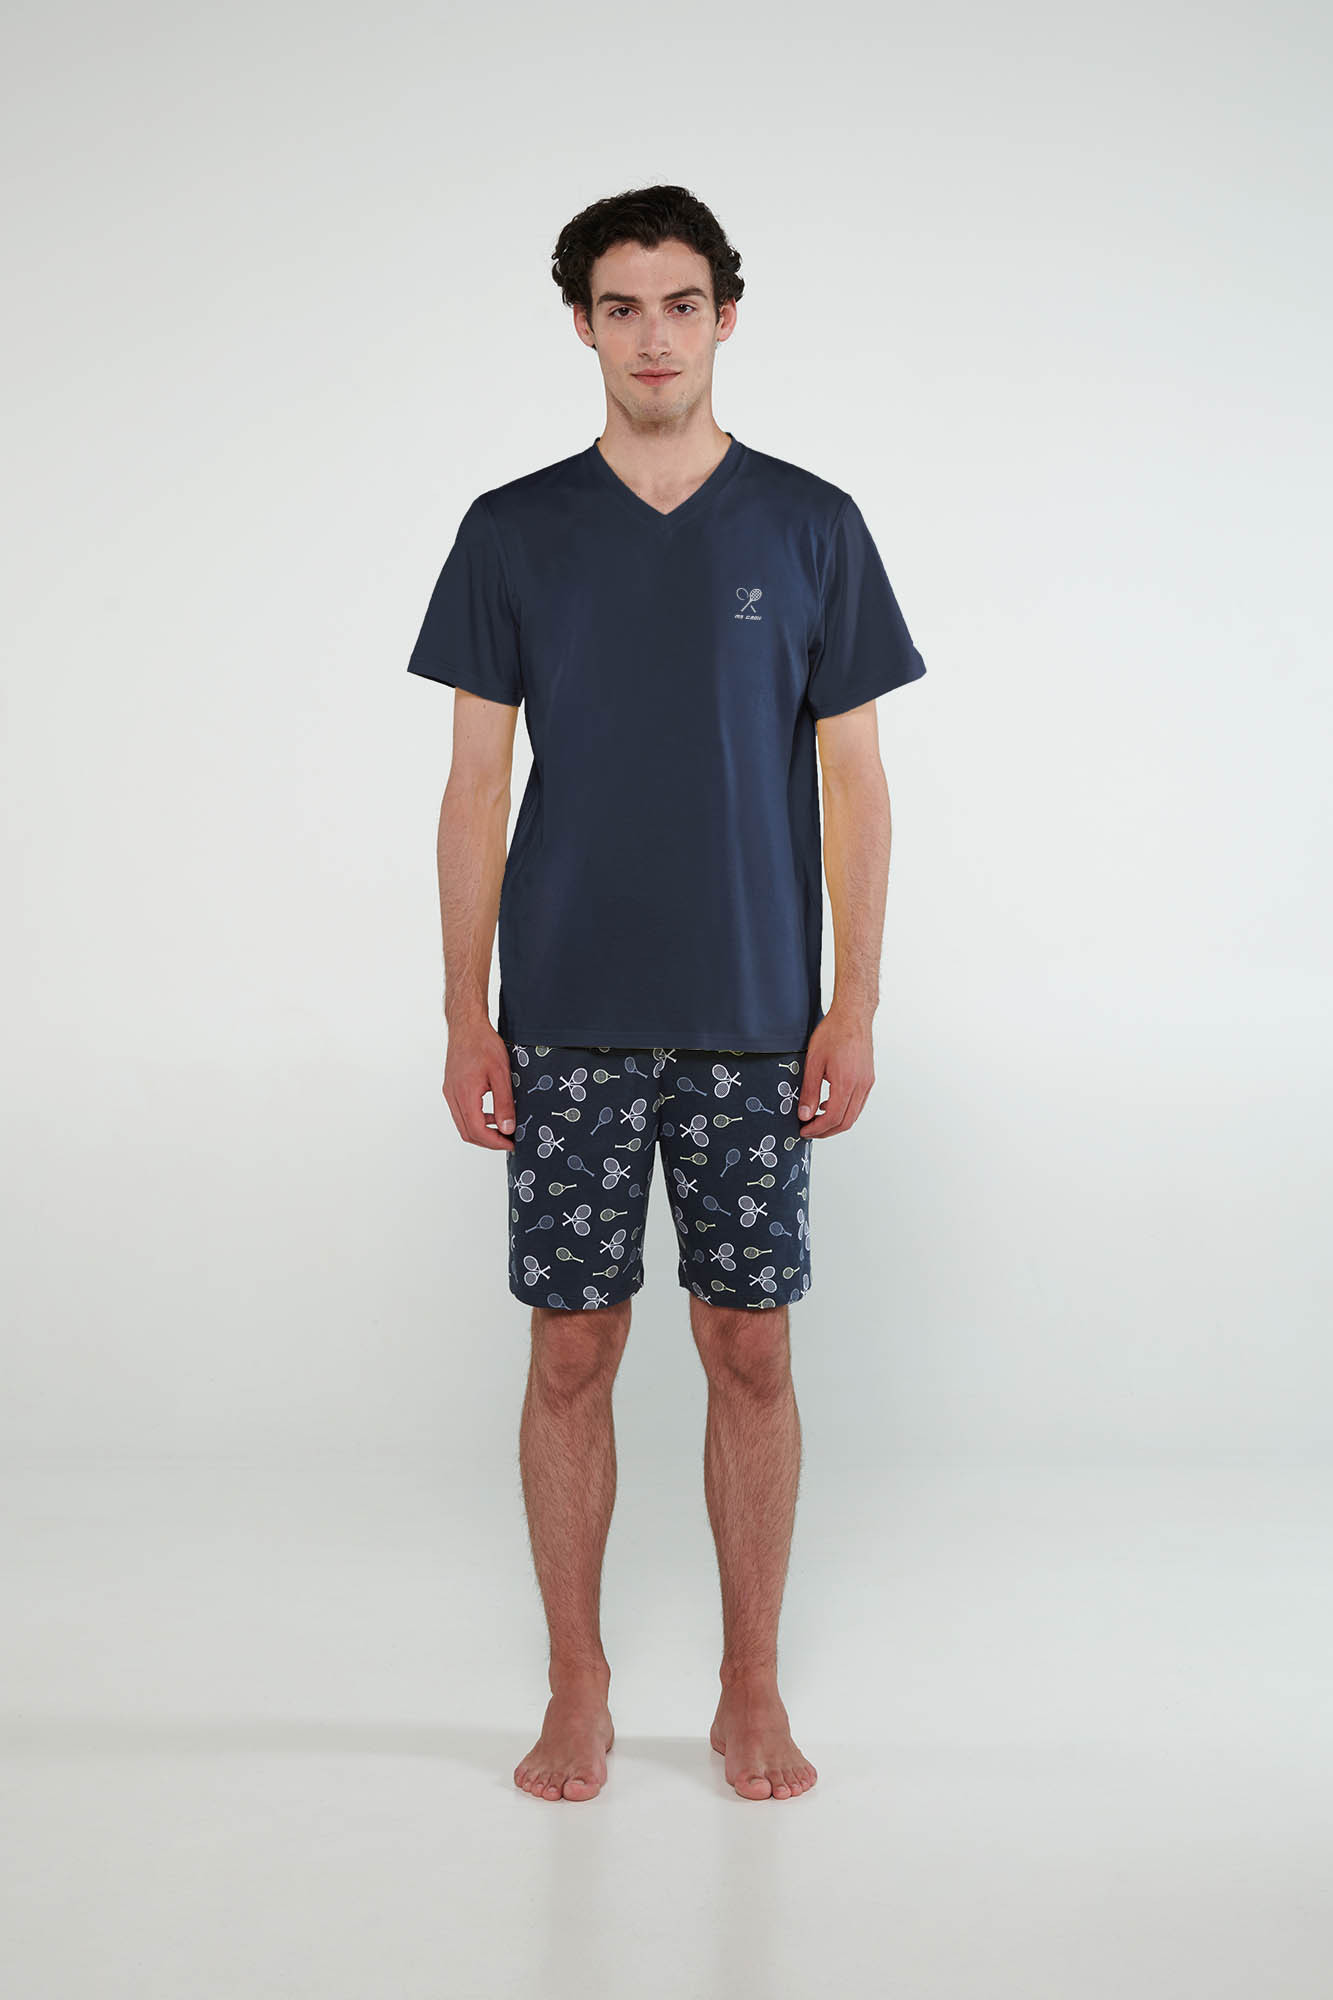 Vamp - Pyžamo s krátkými rukávy 20640 - Vamp gray ombre XL